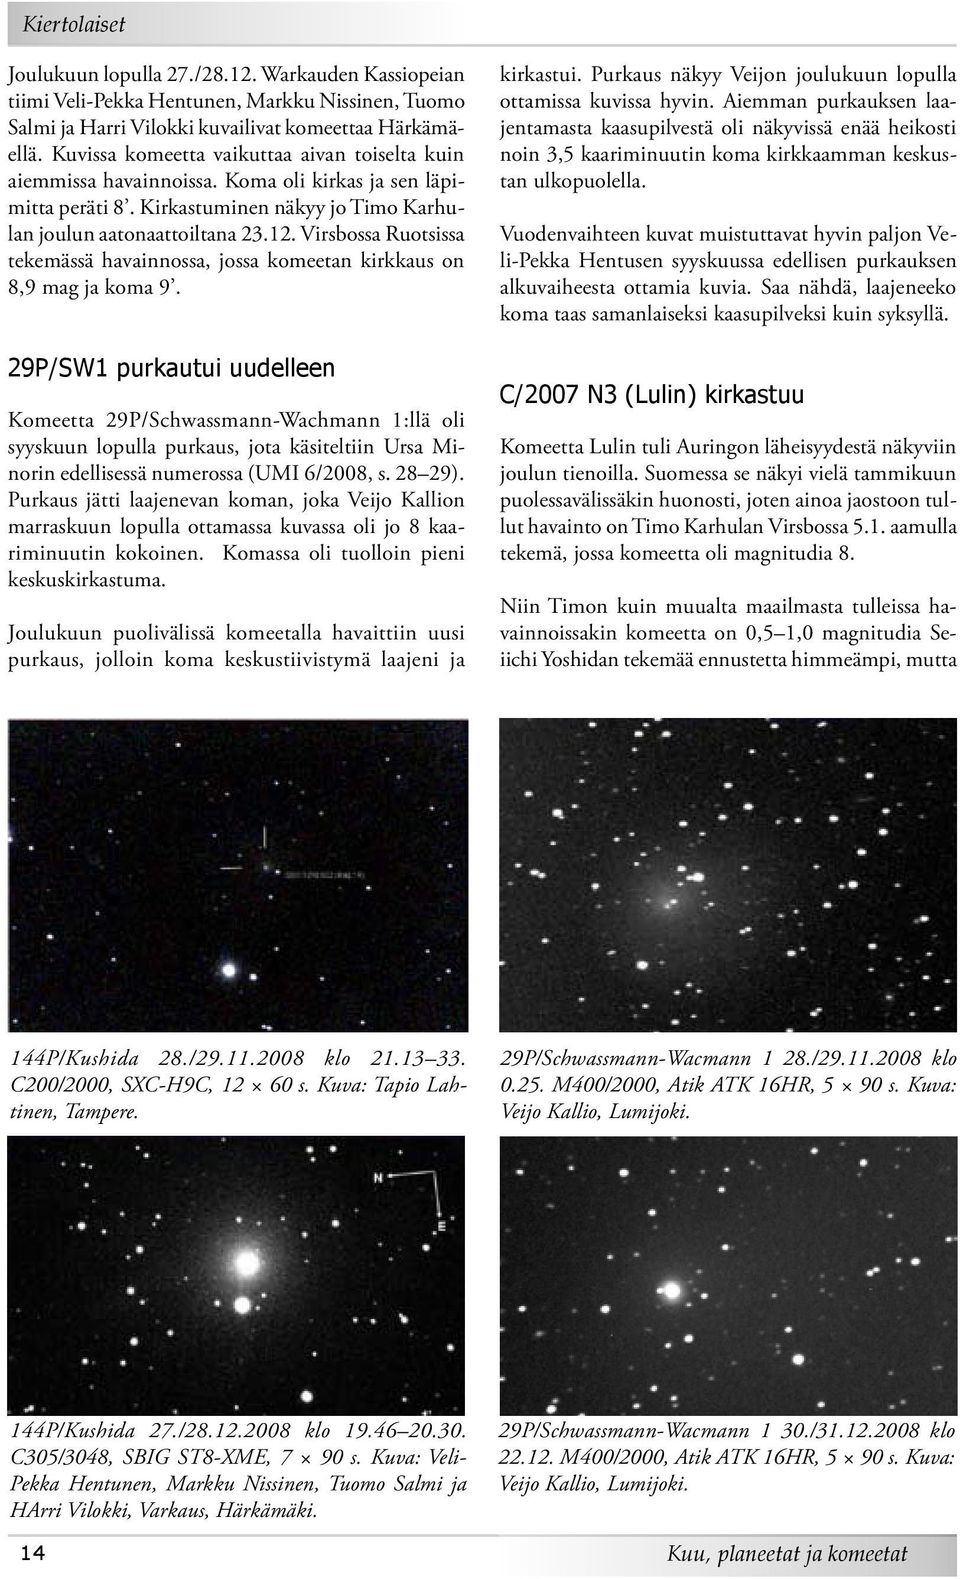 Virsbossa Ruotsissa tekemässä havainnossa, jossa komeetan kirkkaus on 8,9 mag ja koma 9.